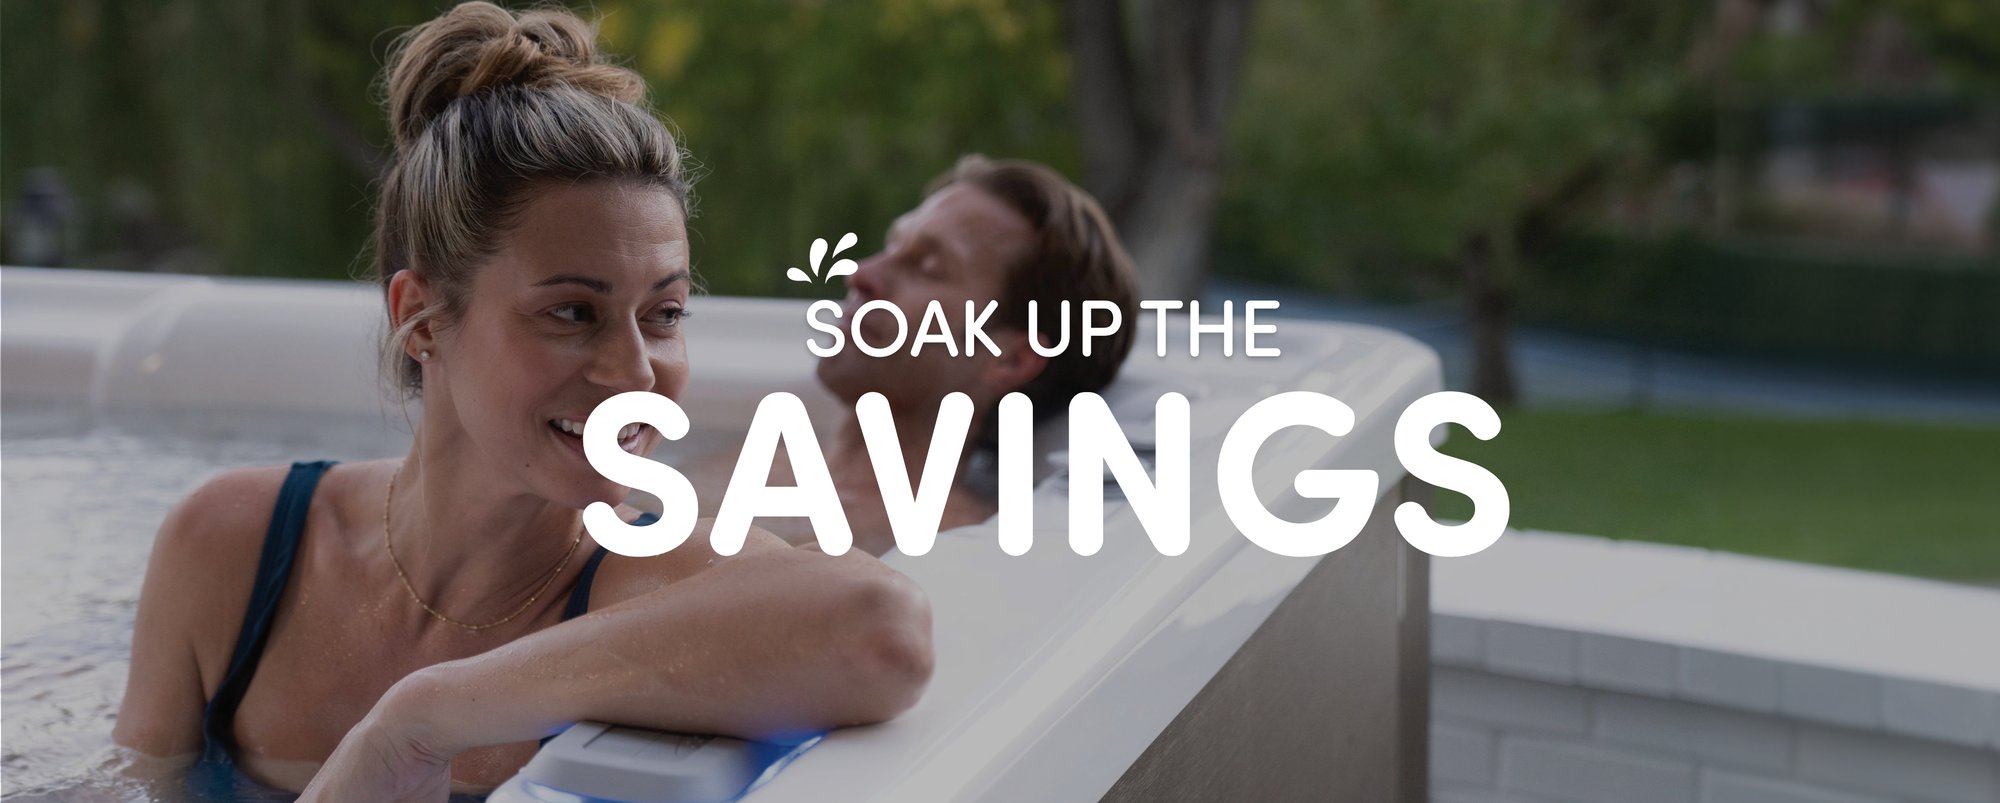 soak-up-the-savings